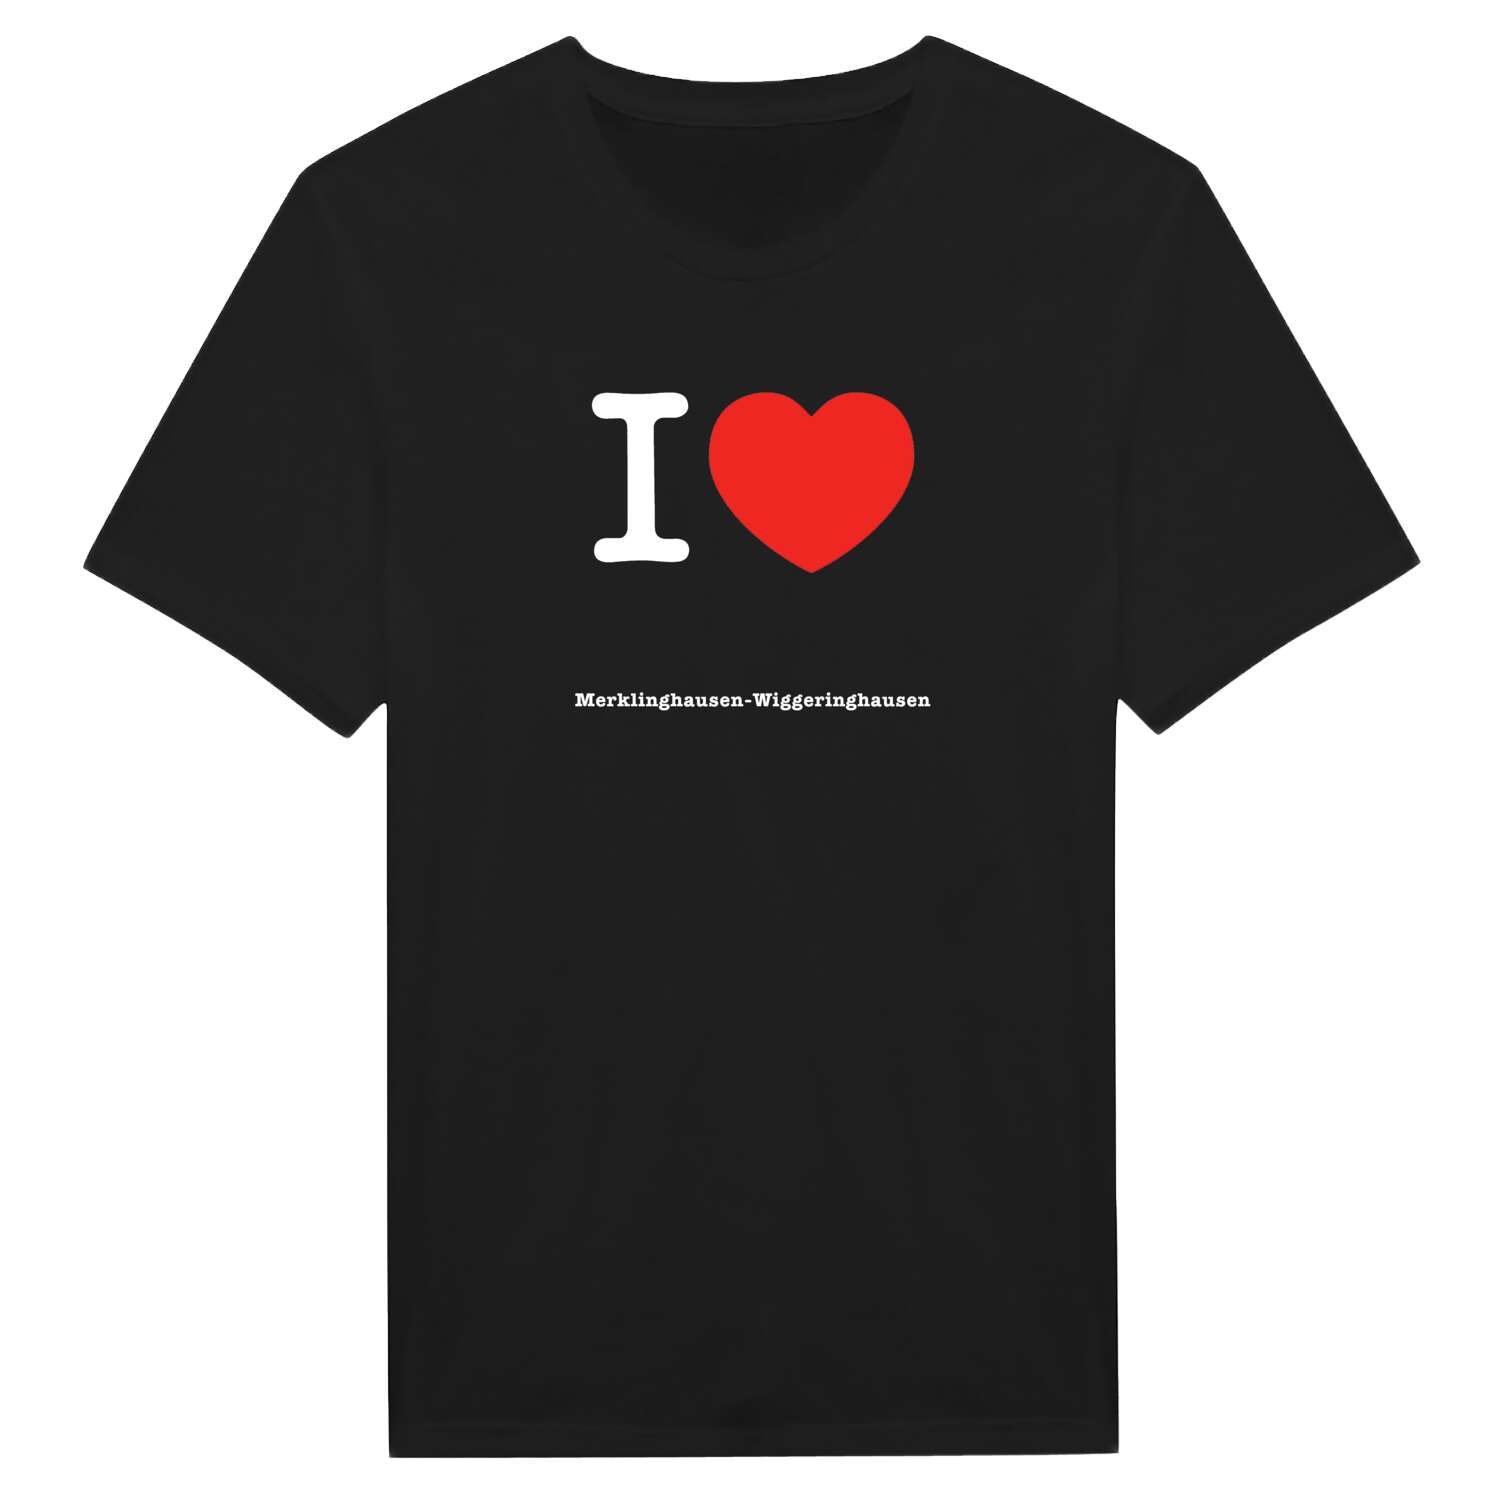 Merklinghausen-Wiggeringhausen T-Shirt »I love«